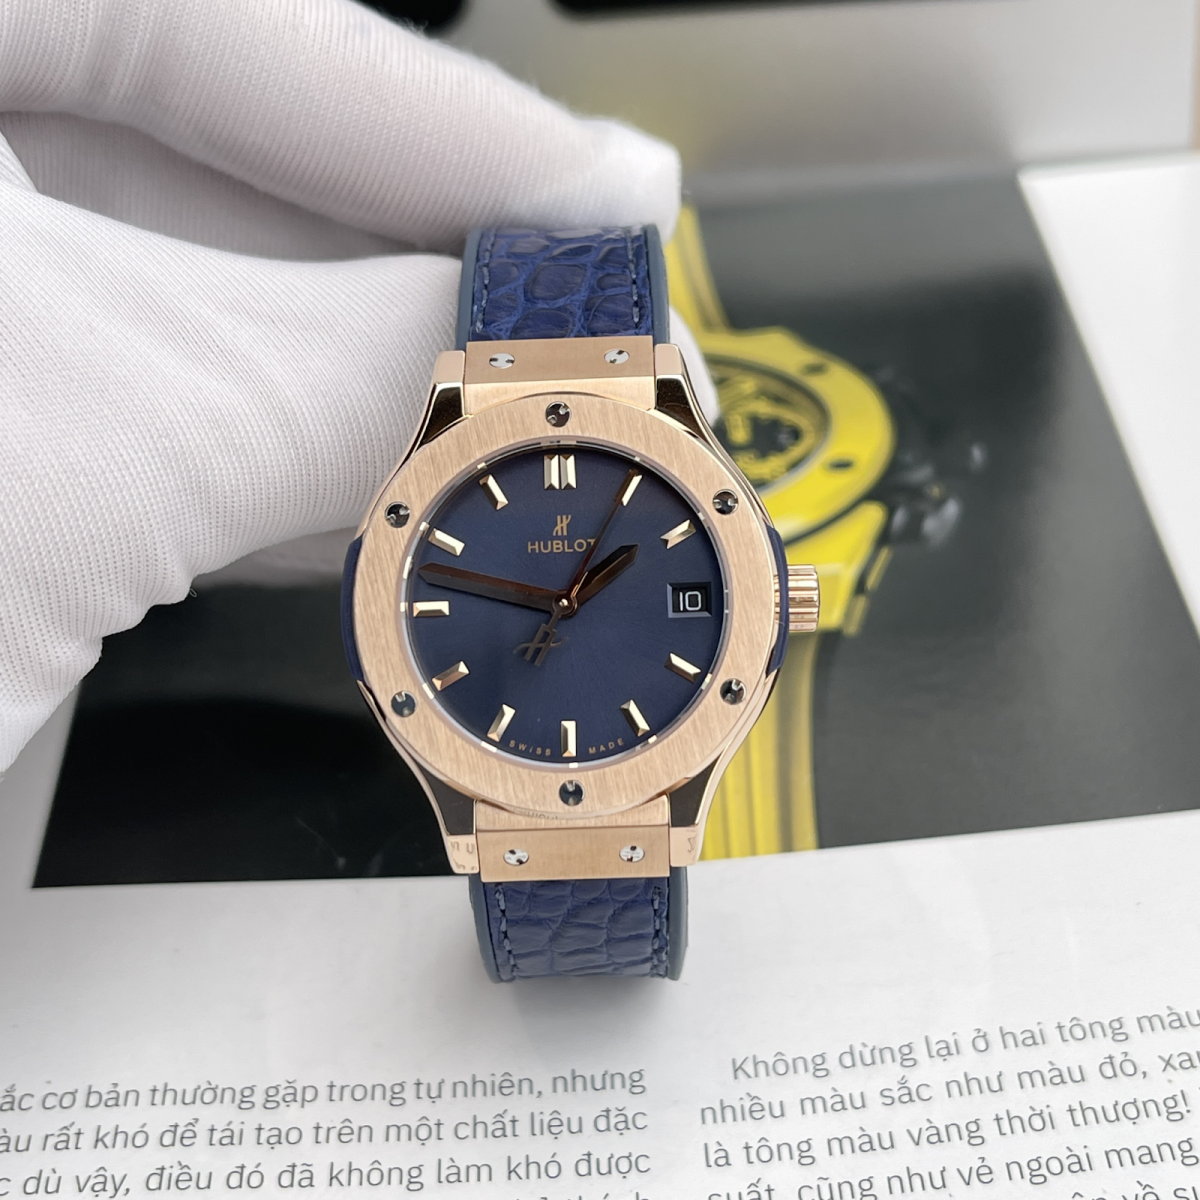 Diện mạo của mẫu đồng hồ Hublot super fake classic fusion có thể chinh phục bất cứ tín đồ yêu thích đồng hồ nào